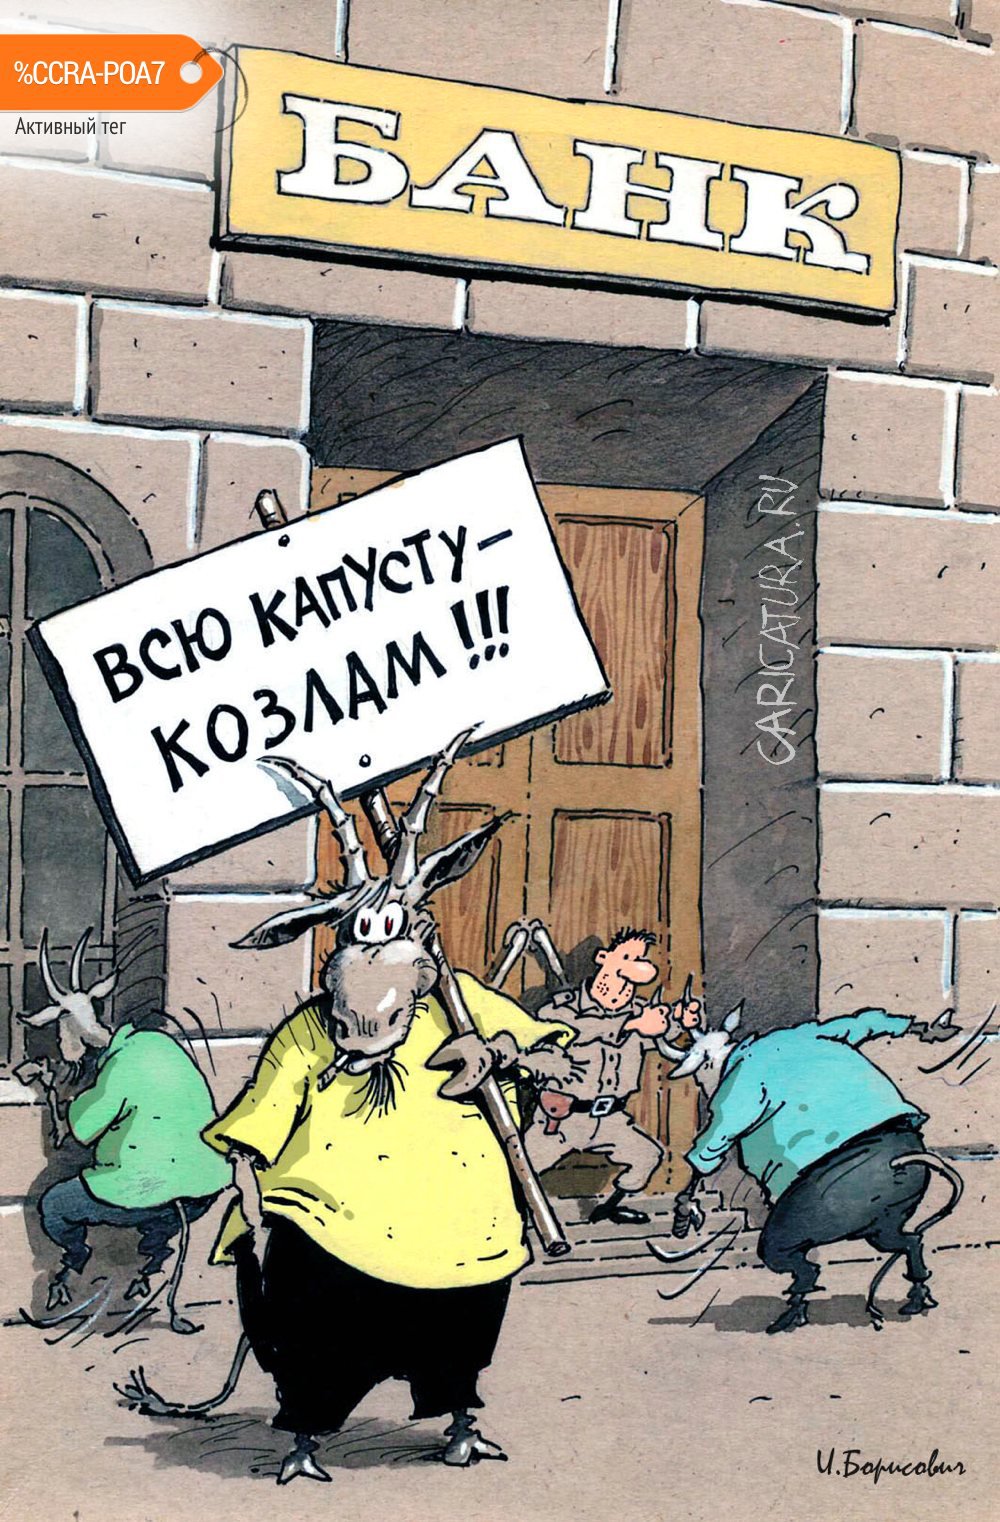 Карикатура "Капусту козлам!", Игорь Елистратов